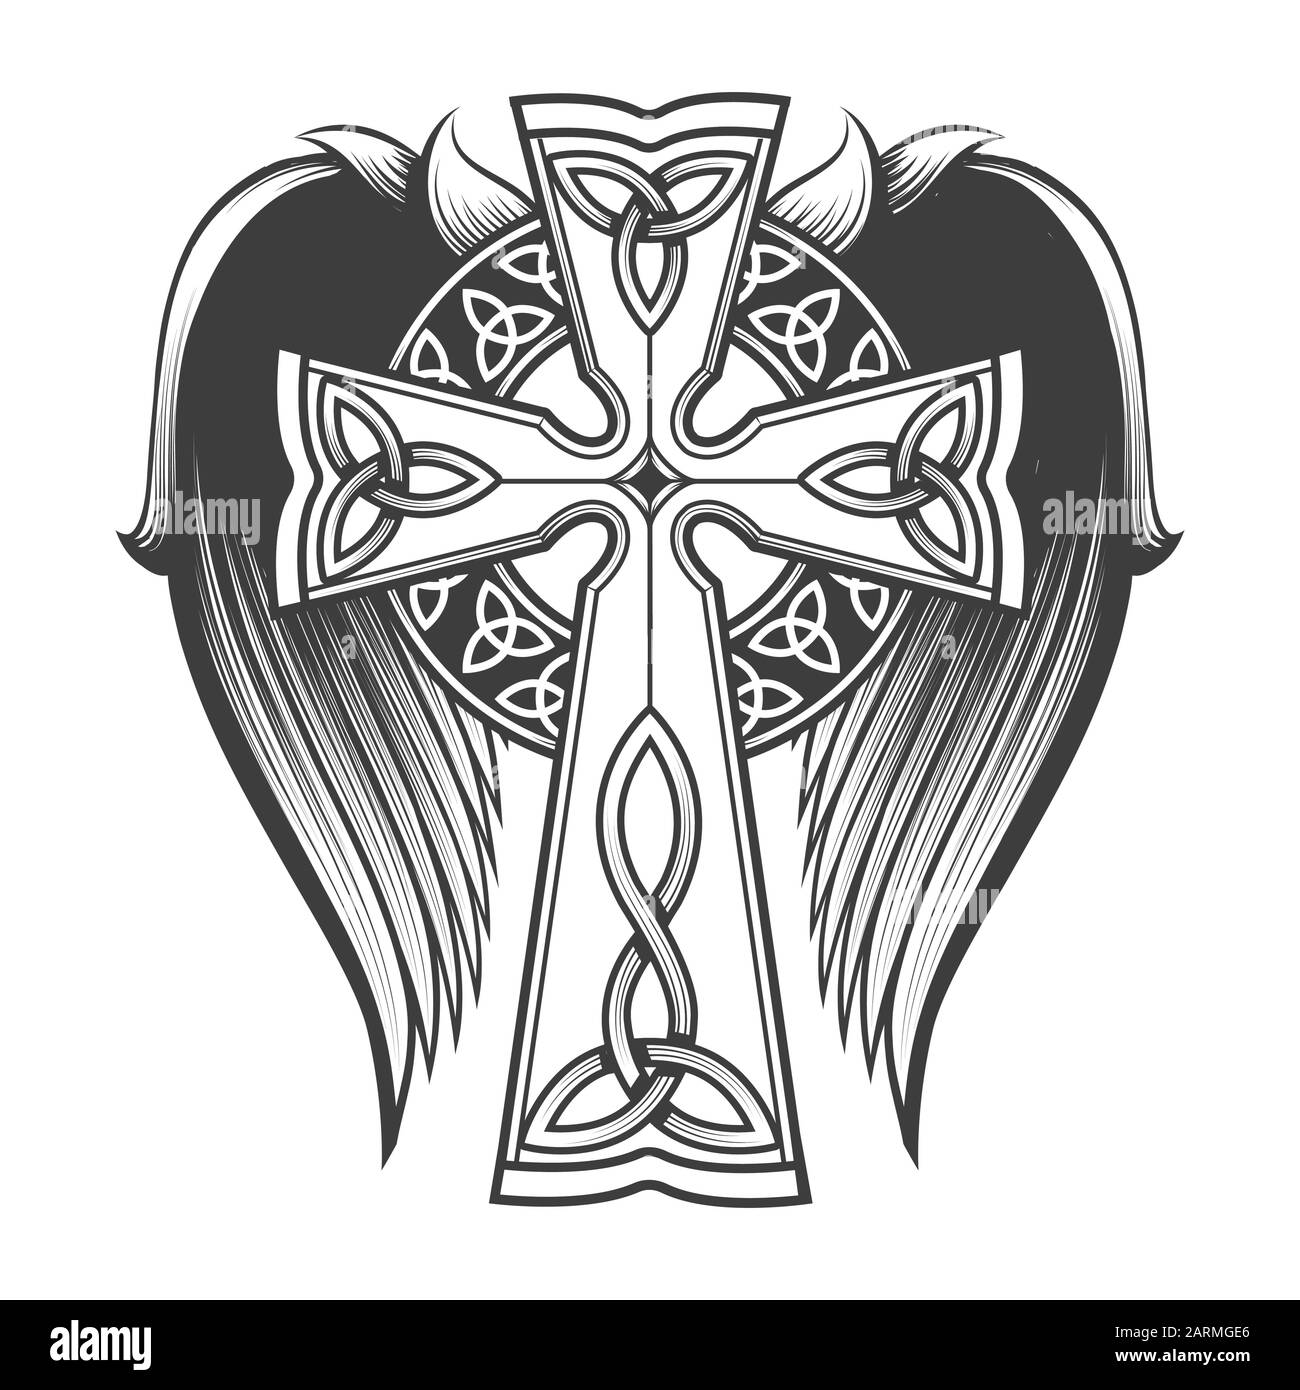 Traversez dans le style celtique avec de grandes ailes tattoo dans le style de gravure. Illustration vectorielle. Illustration de Vecteur